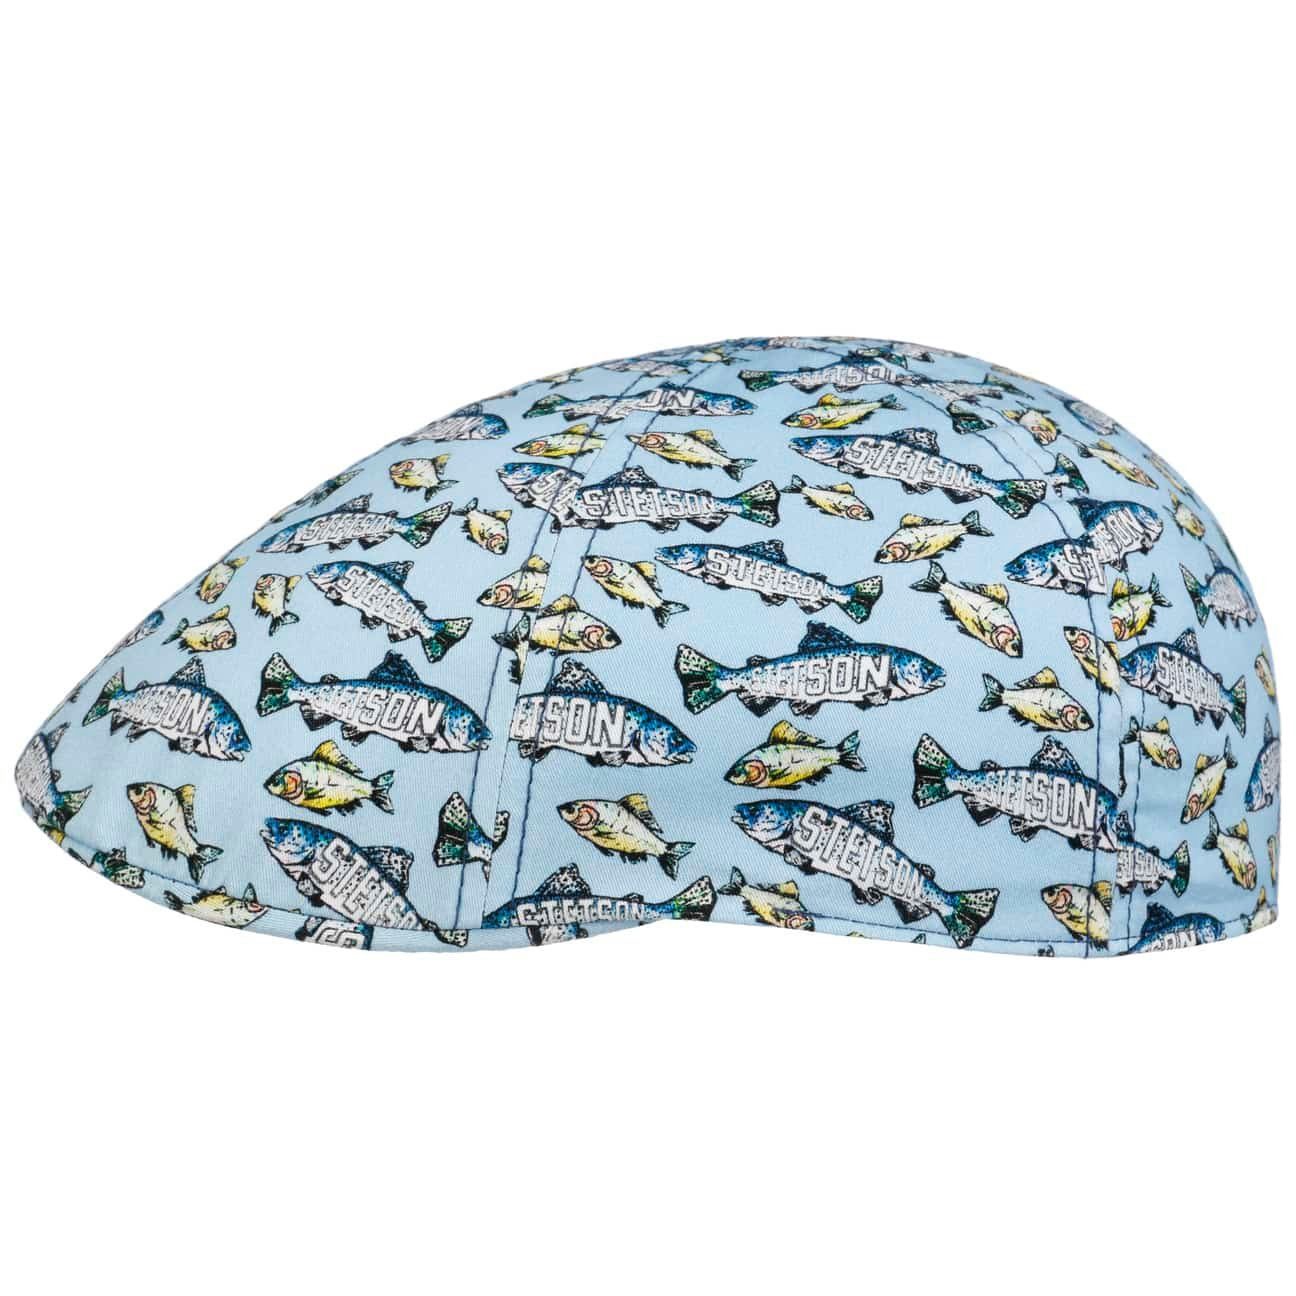 Stetson Flat Cap (1-St) Schirmmütze mit Schirm